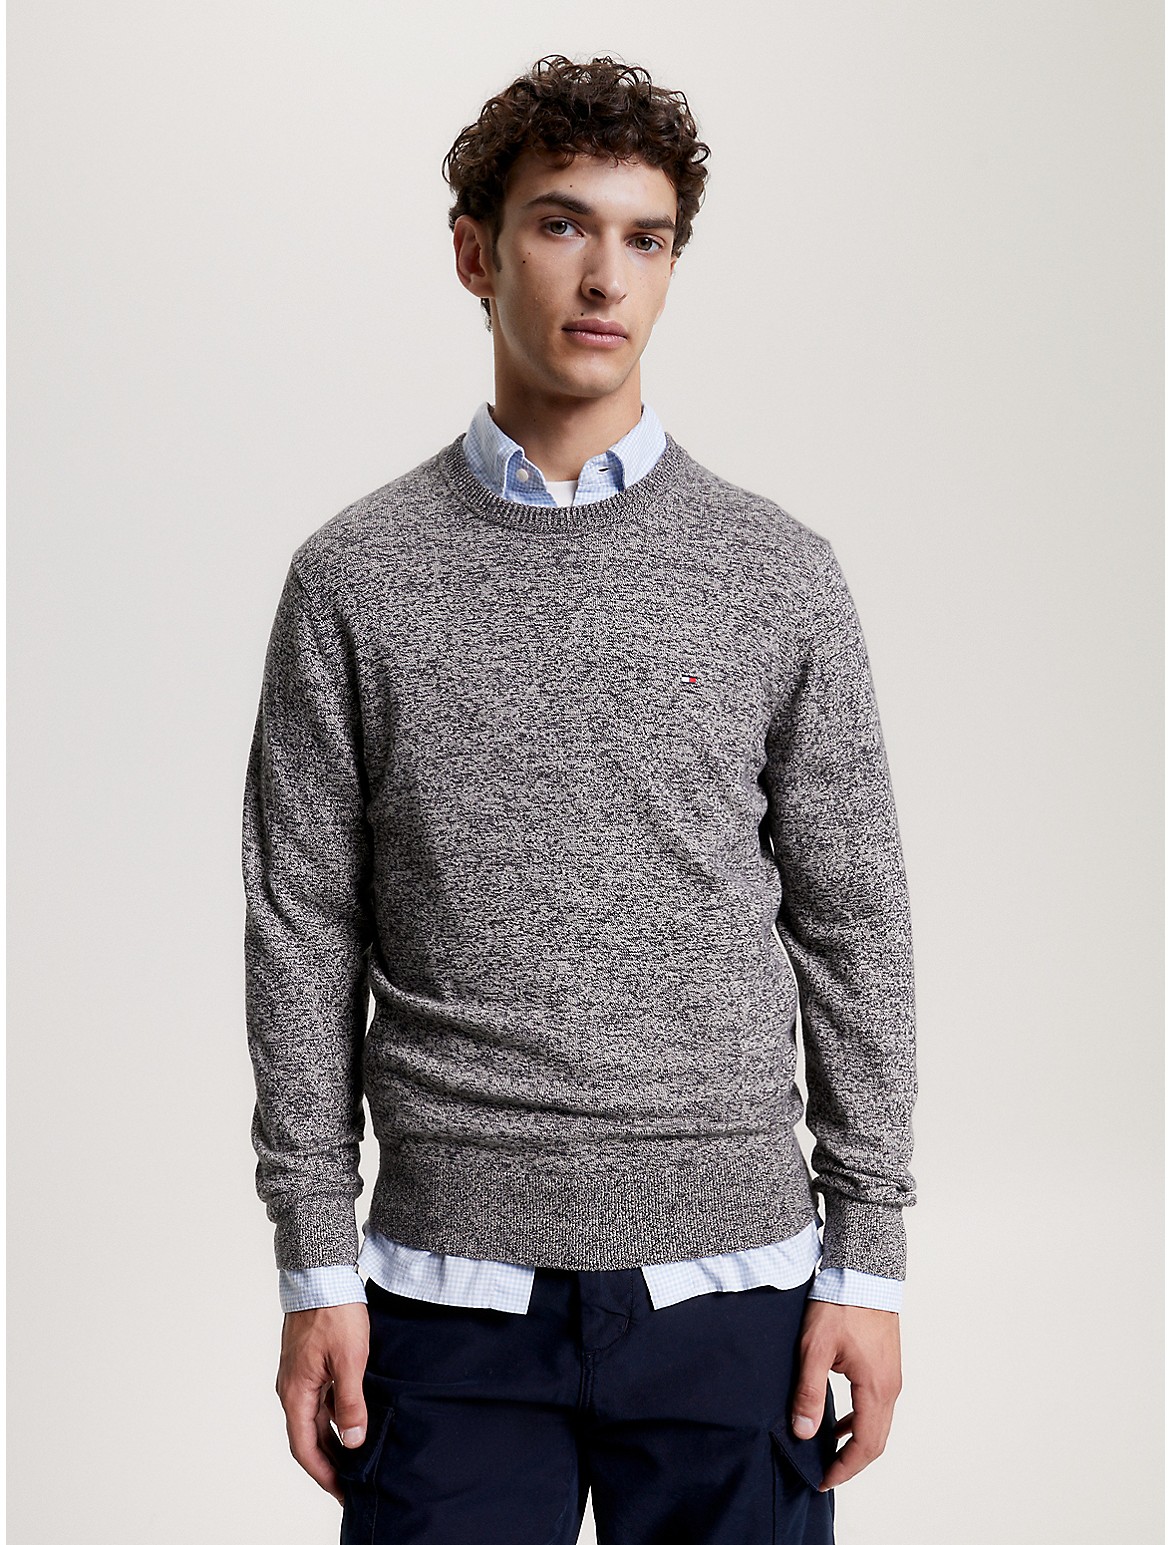 Tommy Hilfiger Men's Cotton Cashmere Blend Crewneck Sweater